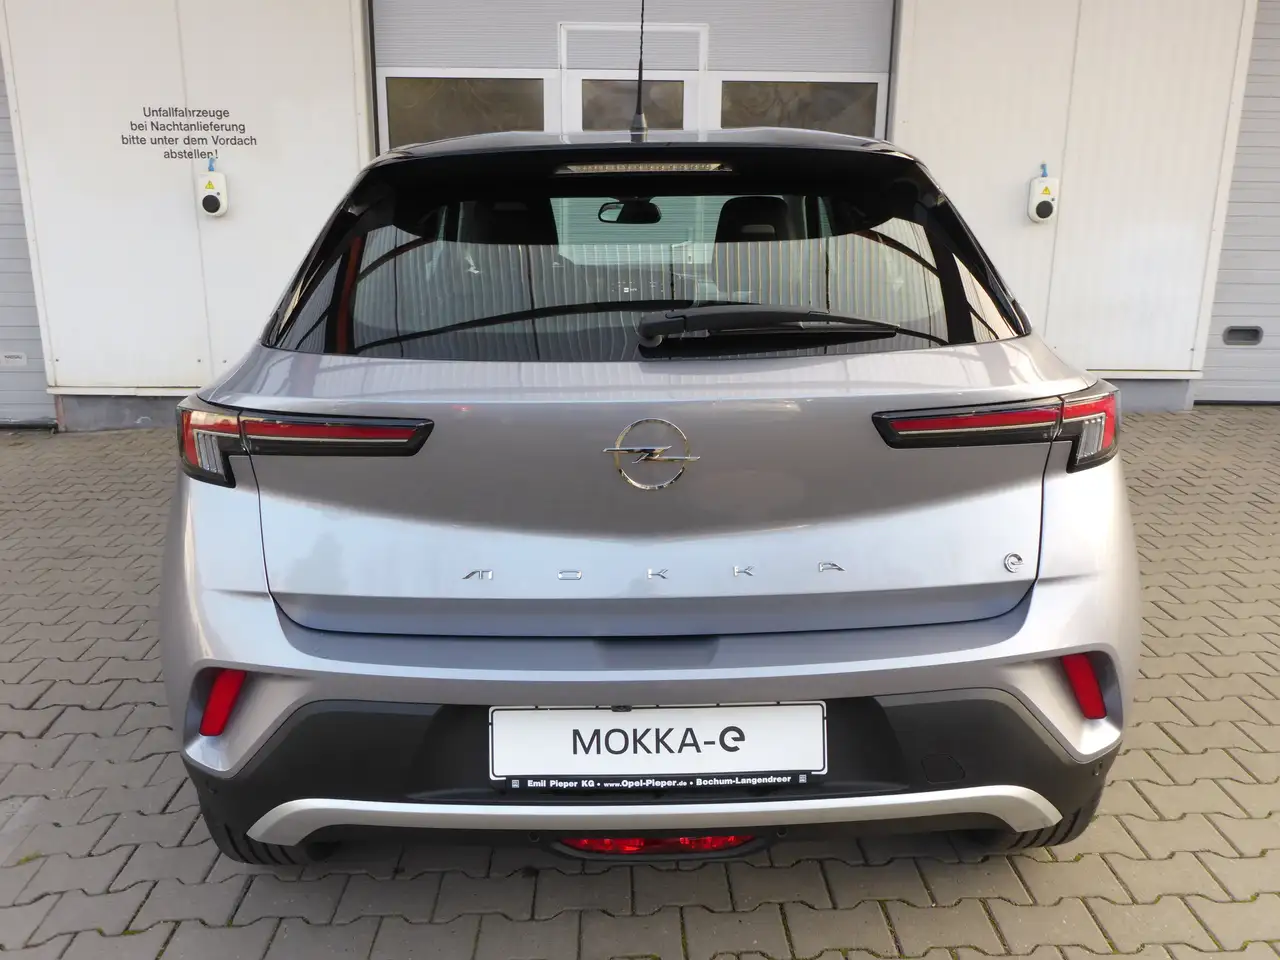 Opel Mokka SUV/Geländewagen/Pickup in Grau neu in Bochum für